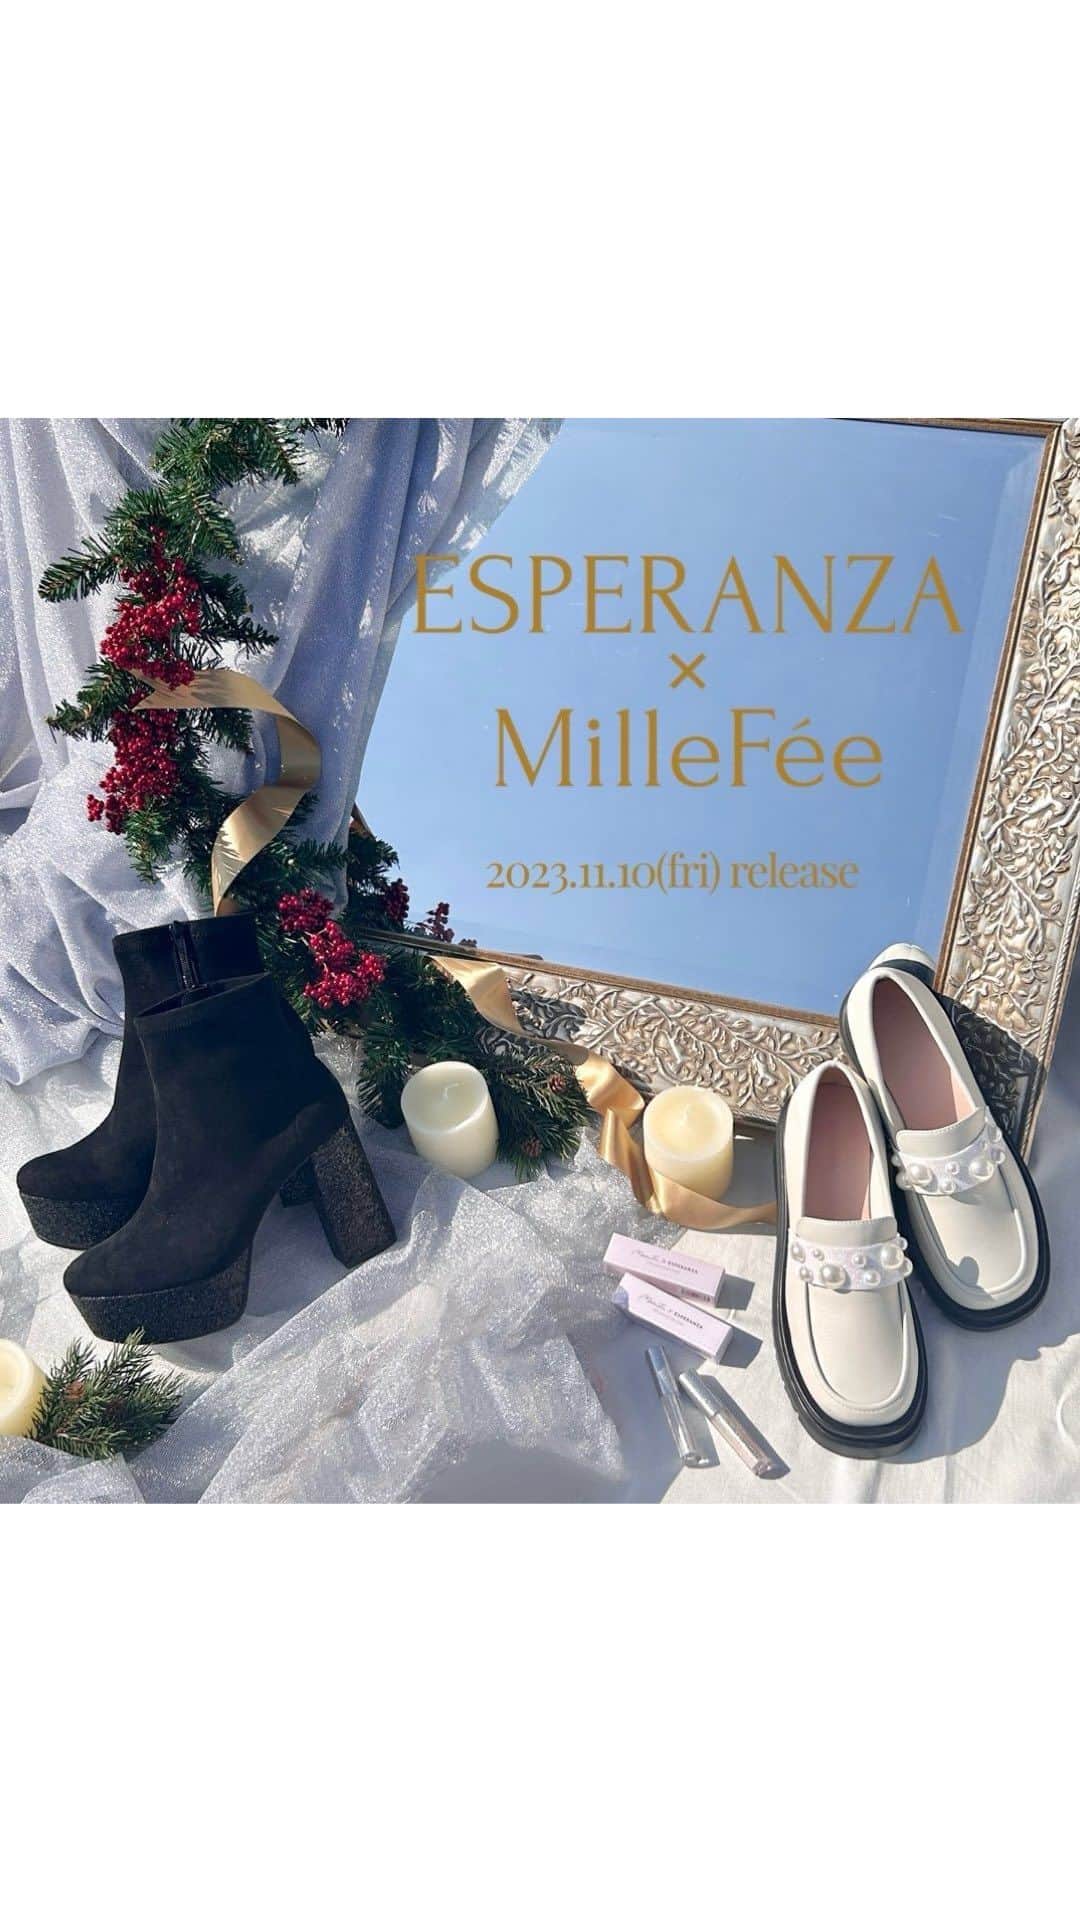 エスペランサ公式のインスタグラム：「「ESPERANZA」と「MilleFée」が  “グリッター”をテーマにしたスペシャルキャンペーンを  11月10日（金）よりスタート✰ ✰ ✰  ♱⋰ ⋱✮⋰ ⋱♱⋰ ⋱✮⋰ ⋱♱⋰ ⋱✮⋰ ⋱♱⋰⋱  『新しいわたしに出逢う魔法』がコンセプトの 化粧品ブランド「MilleFée（ミルフィー）」との スペシャルキャンペーンを開催いたします！  『 #ラク盛りブーツ 』のグリッターヒールを彷彿とさせる 『 #ステラグリッターライナー 』の人気2色をピックアップした 「ESPERANZA」限定のスペシャルパッケージが登場します！  “グリッター”をテーマに、 これからのホリデーシーズンに向け “目元も足元も華やかに過ごす特別な日”を 演出するご提案をいたします♡  【店舗では】 『ステラグリッターライナー』を ご購入いただいたお客様対象で、 その場で使用できる 1,000円オフクーポンをプレゼントいたします！  【WEBでは】 オンラインストア限定プライス 『セット販売価格』￥13,530（税込）  ①『ラク盛りグリッターヒールショートブーツ P06-67044』  価格：￥12,980（税込） サイズ展開：S～LL カラー展開：アイボリー、ブラック、ベージュ、ピンク  ②『ステラグリッターライナー』 @millefee_official   価格 : ￥1,540（税込） カラー展開 : 6色展開  ♱⋰ ⋱✮⋰ ⋱♱⋰ ⋱✮⋰ ⋱♱⋰ ⋱✮⋰ ⋱♱⋰⋱  “グリッター”をテーマに、 これからのホリデーシーズンに向け “目元も足元も華やかに過ごす特別な日”を 演出するご提案をいたします。  ♱⋰ ⋱✮⋰ ⋱♱⋰ ⋱✮⋰ ⋱♱⋰ ⋱✮⋰ ⋱♱⋰⋱  #エスペランサ #MilleFee #ミルフィー #厚底ブーツ #厚底 #プラットフォーム #プラットフォームシューズ #ショートブーツ #クリスマスギフト  #クリスマスプレゼント #リキッドグリッター #グリッター #涙袋 #涙袋メイク #コスメ紹介」